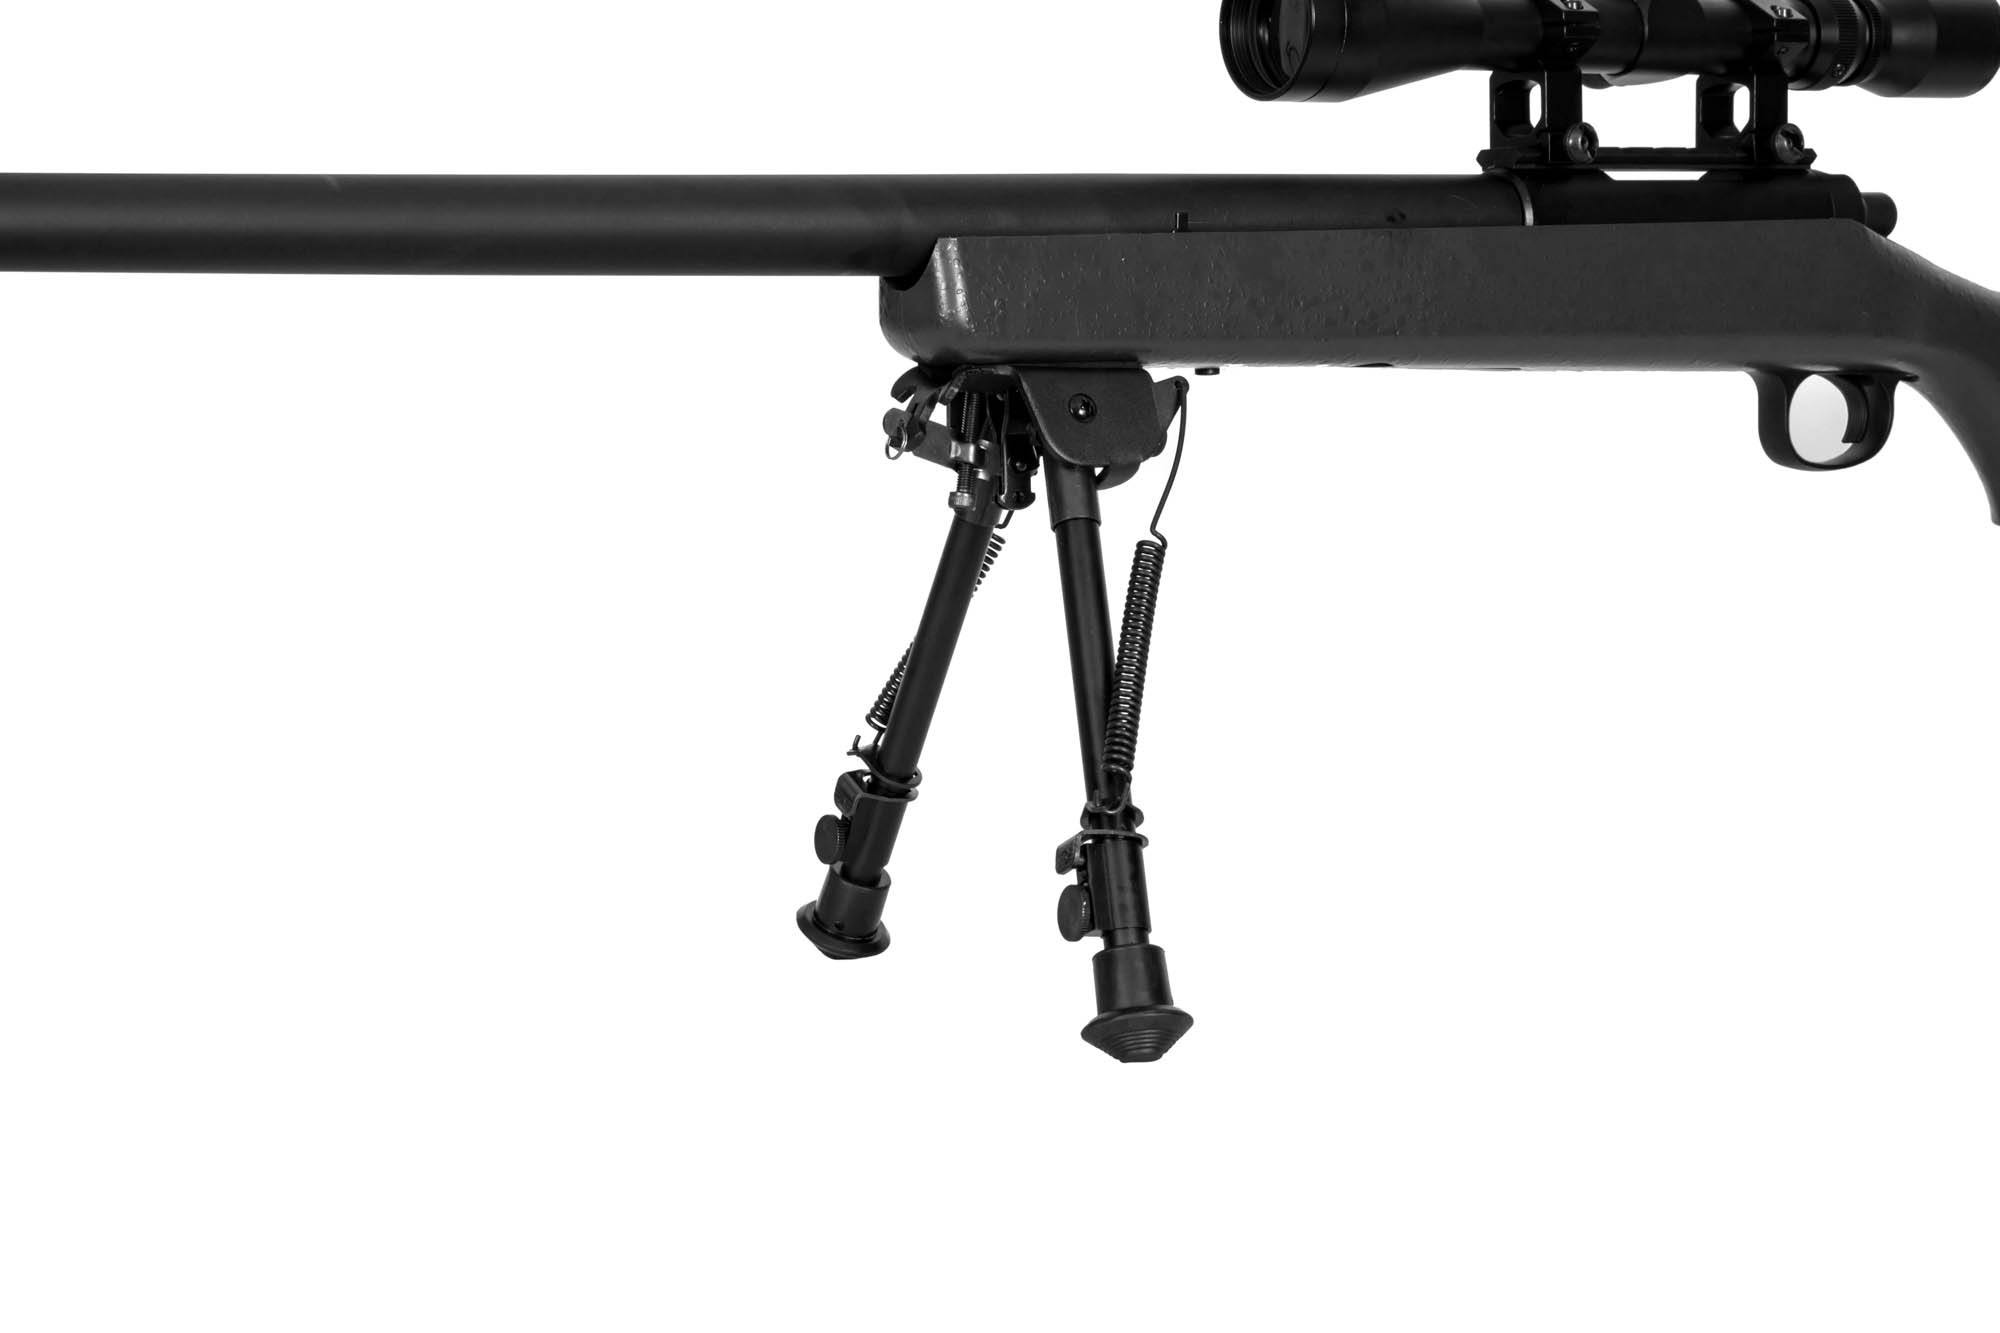 SW-10 Sniper Rifle (avec lunette + bipied) - noir